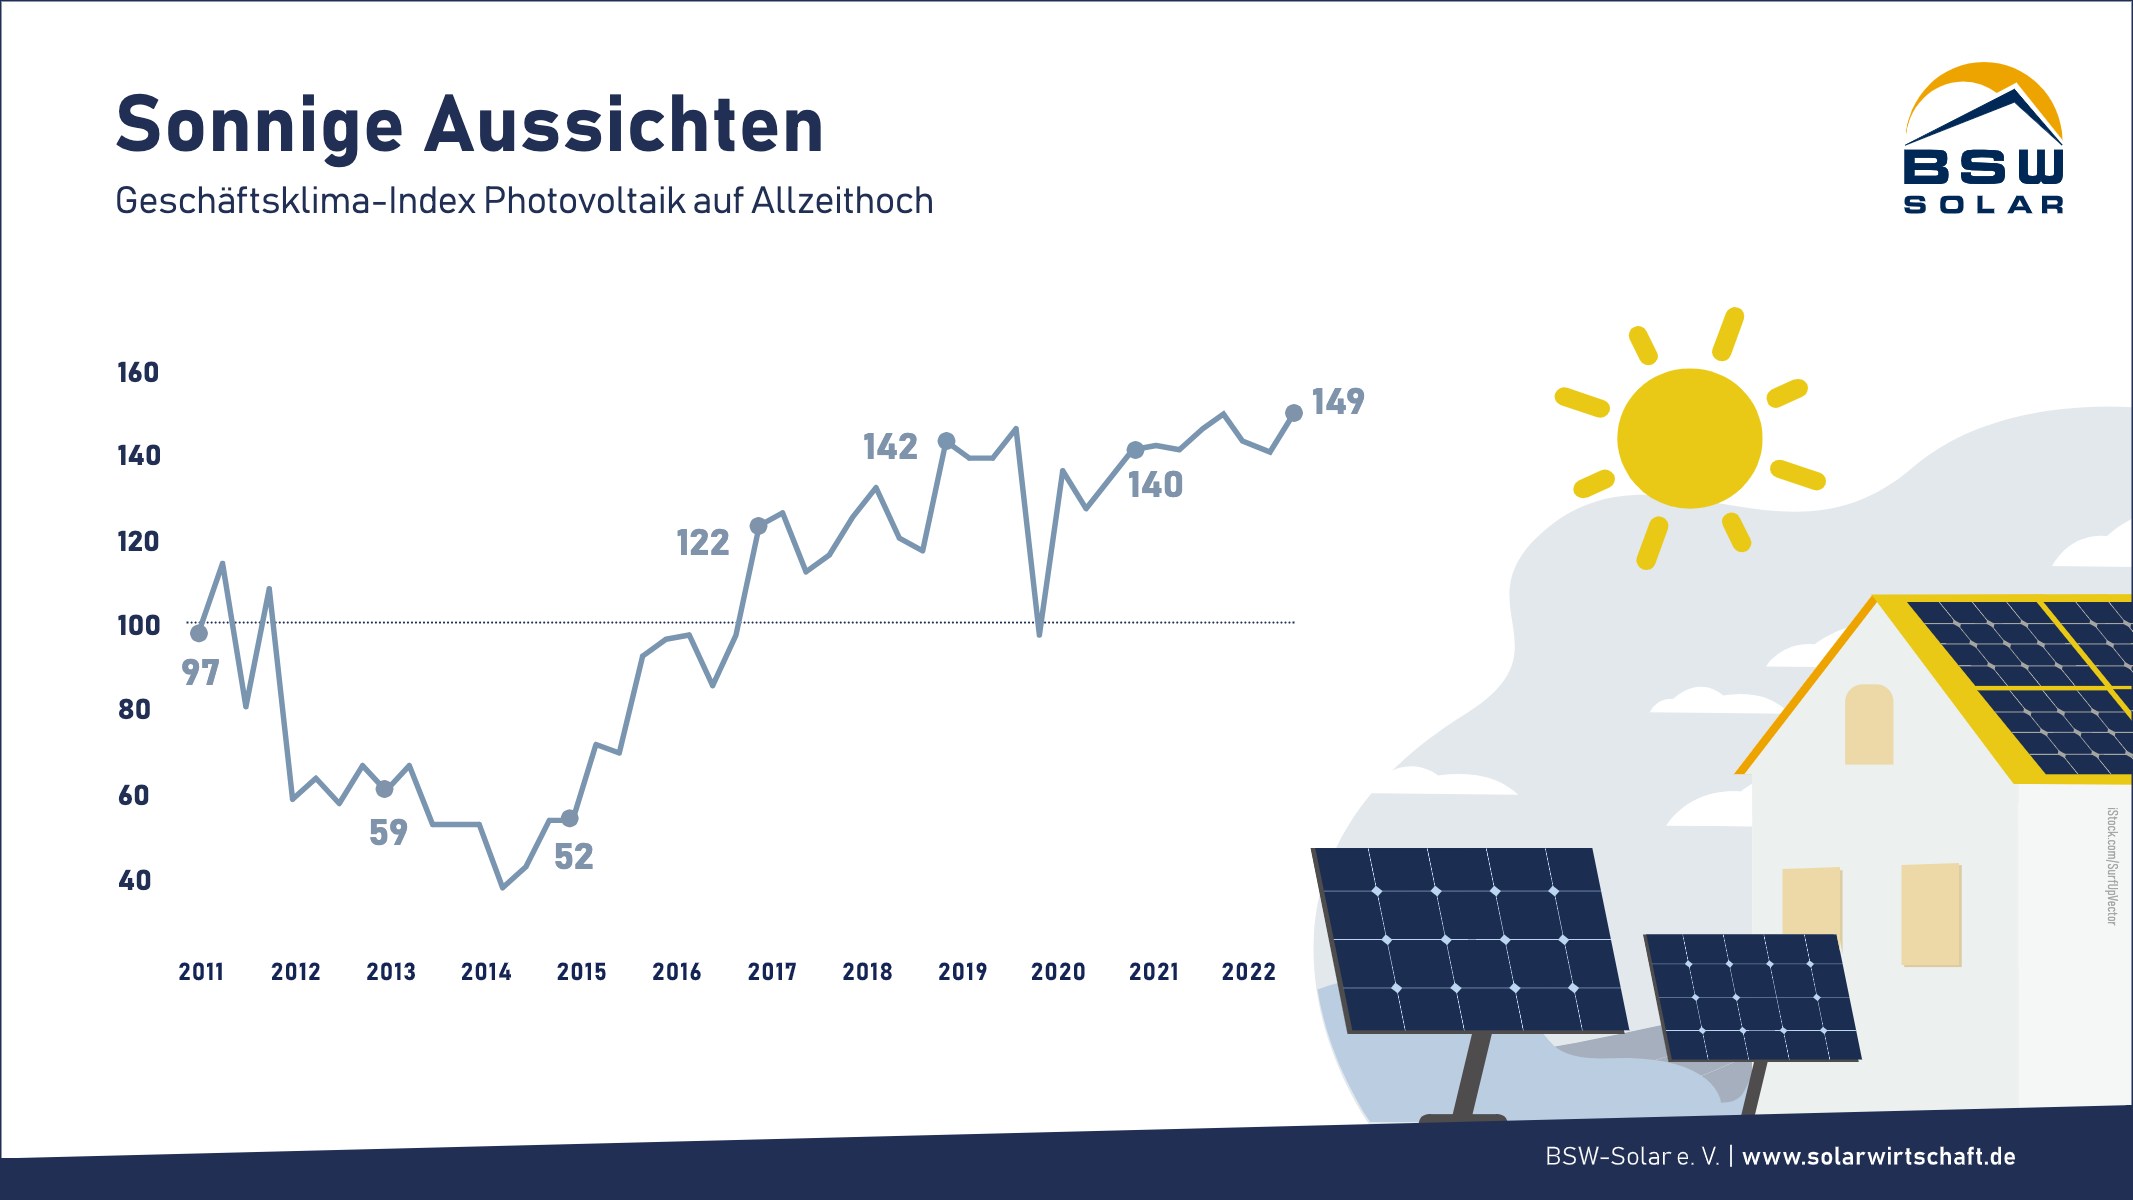 Photovoltaik-Geschäftsklimaindex auf Allzeithoch – pv magazine